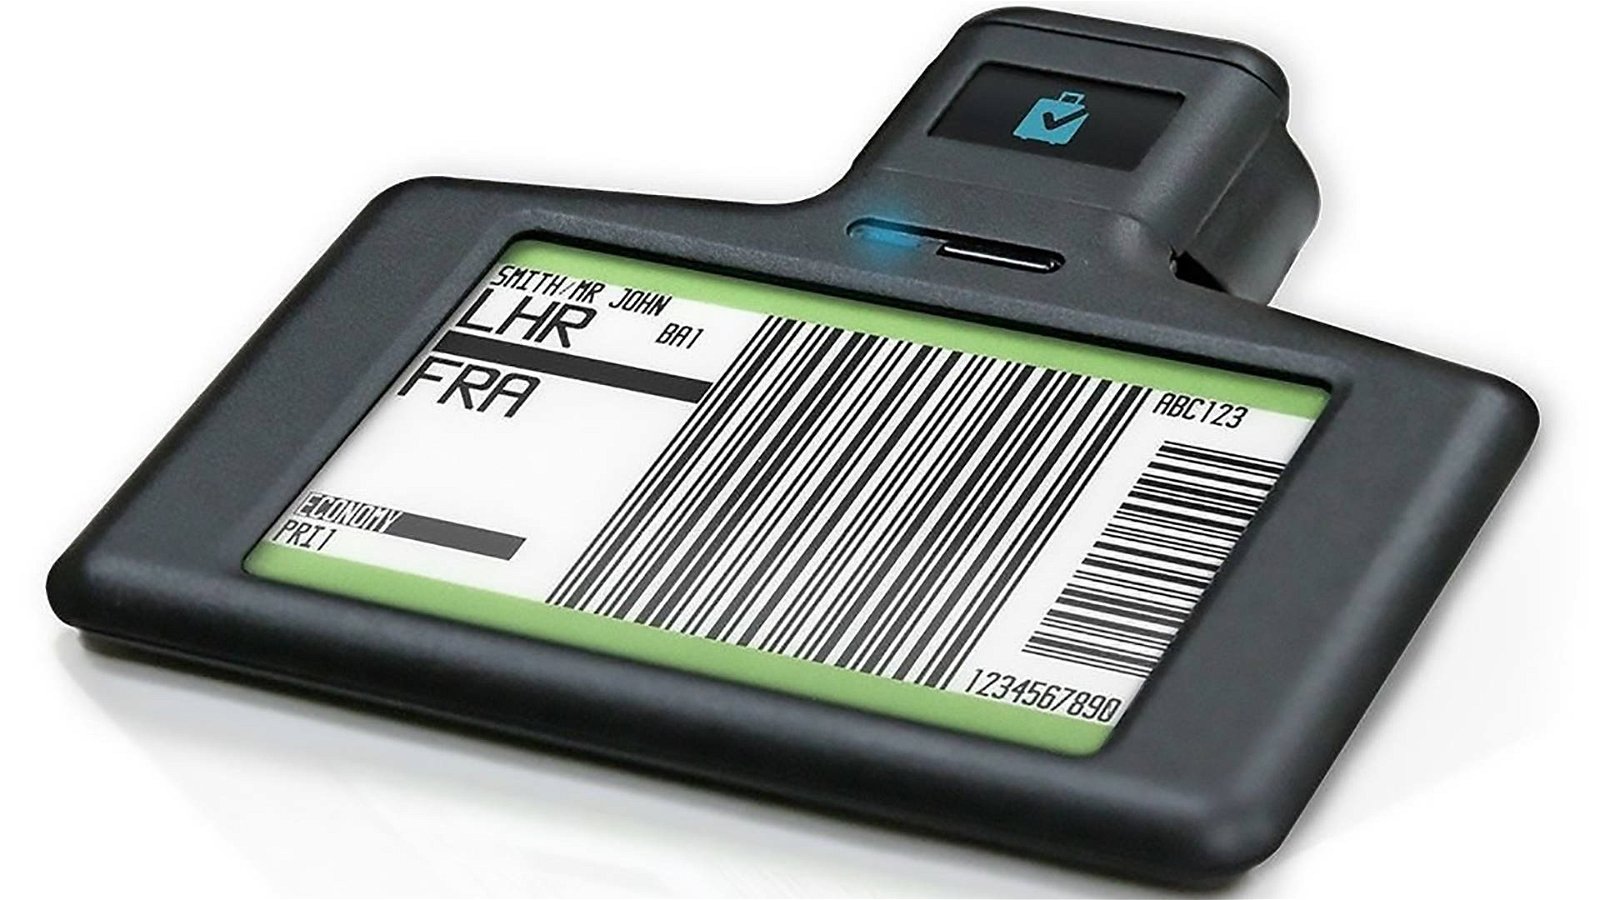 Immagine di British Airways introduce i tag RFID, addio bagagli persi e check-in lunghi